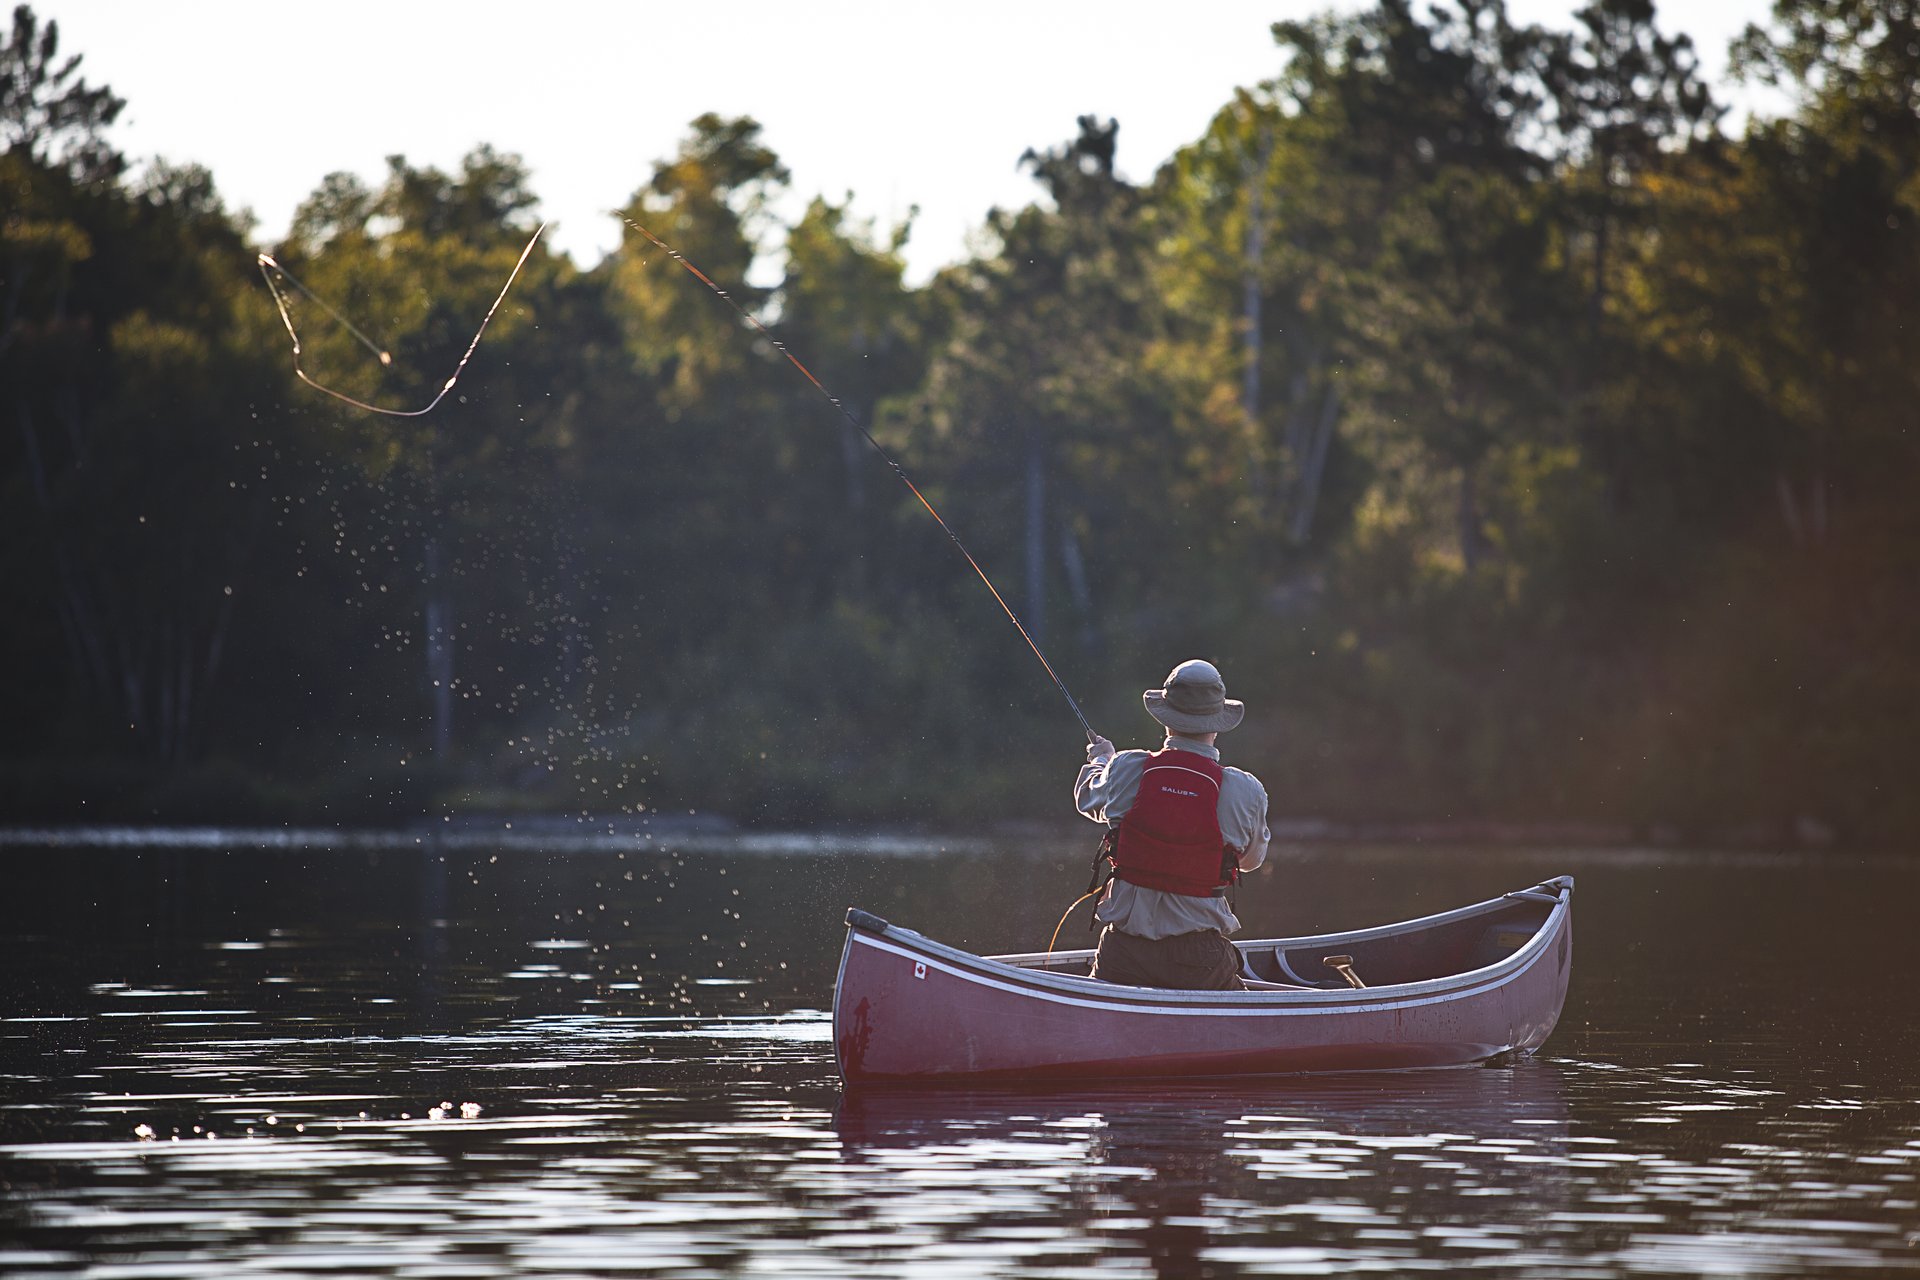 Fly fishing from a canoe near Sudbury, Ontario